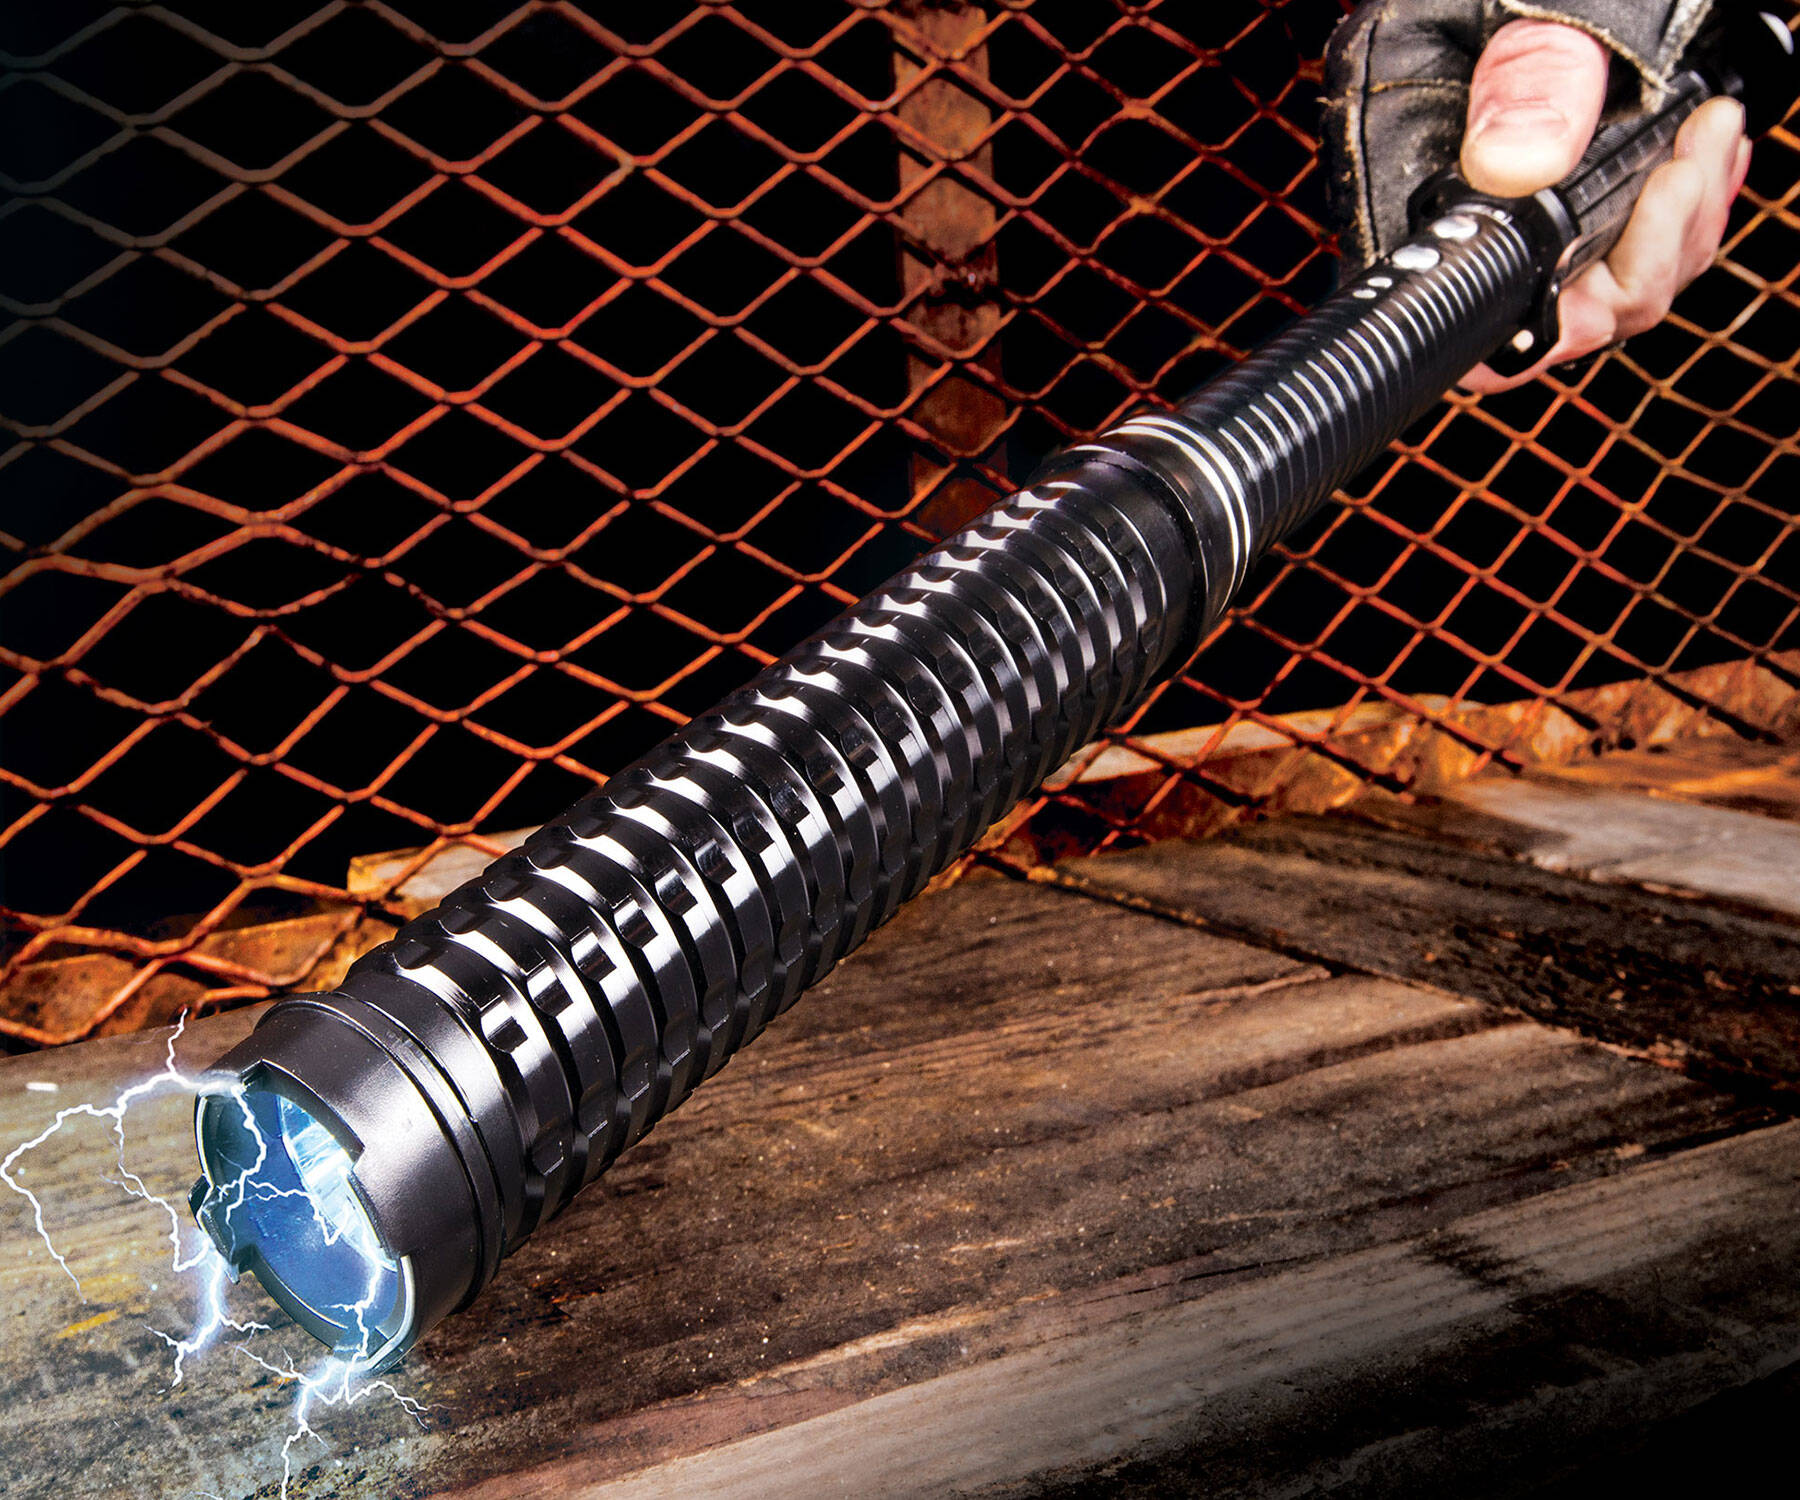 5 Million Volt Stun Gun Flashlight Baton - coolthings.us